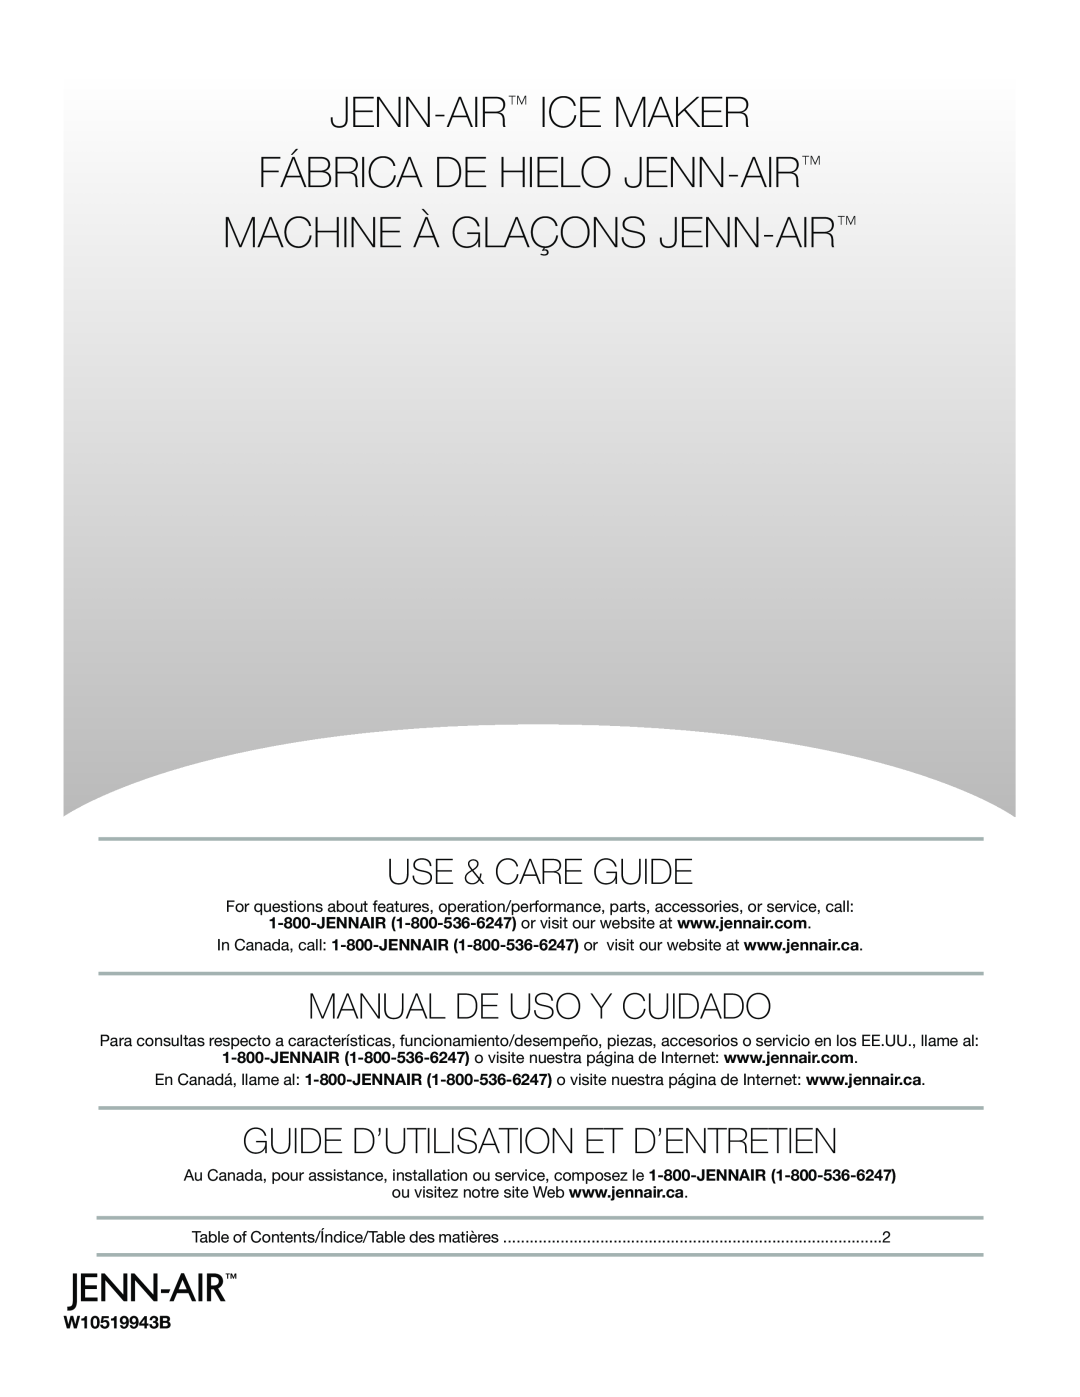 Jenn-Air W10519943B manual Use & Care Guide, Manual De Uso Y Cuidado, Guide D’Utilisation Et D’Entretien 